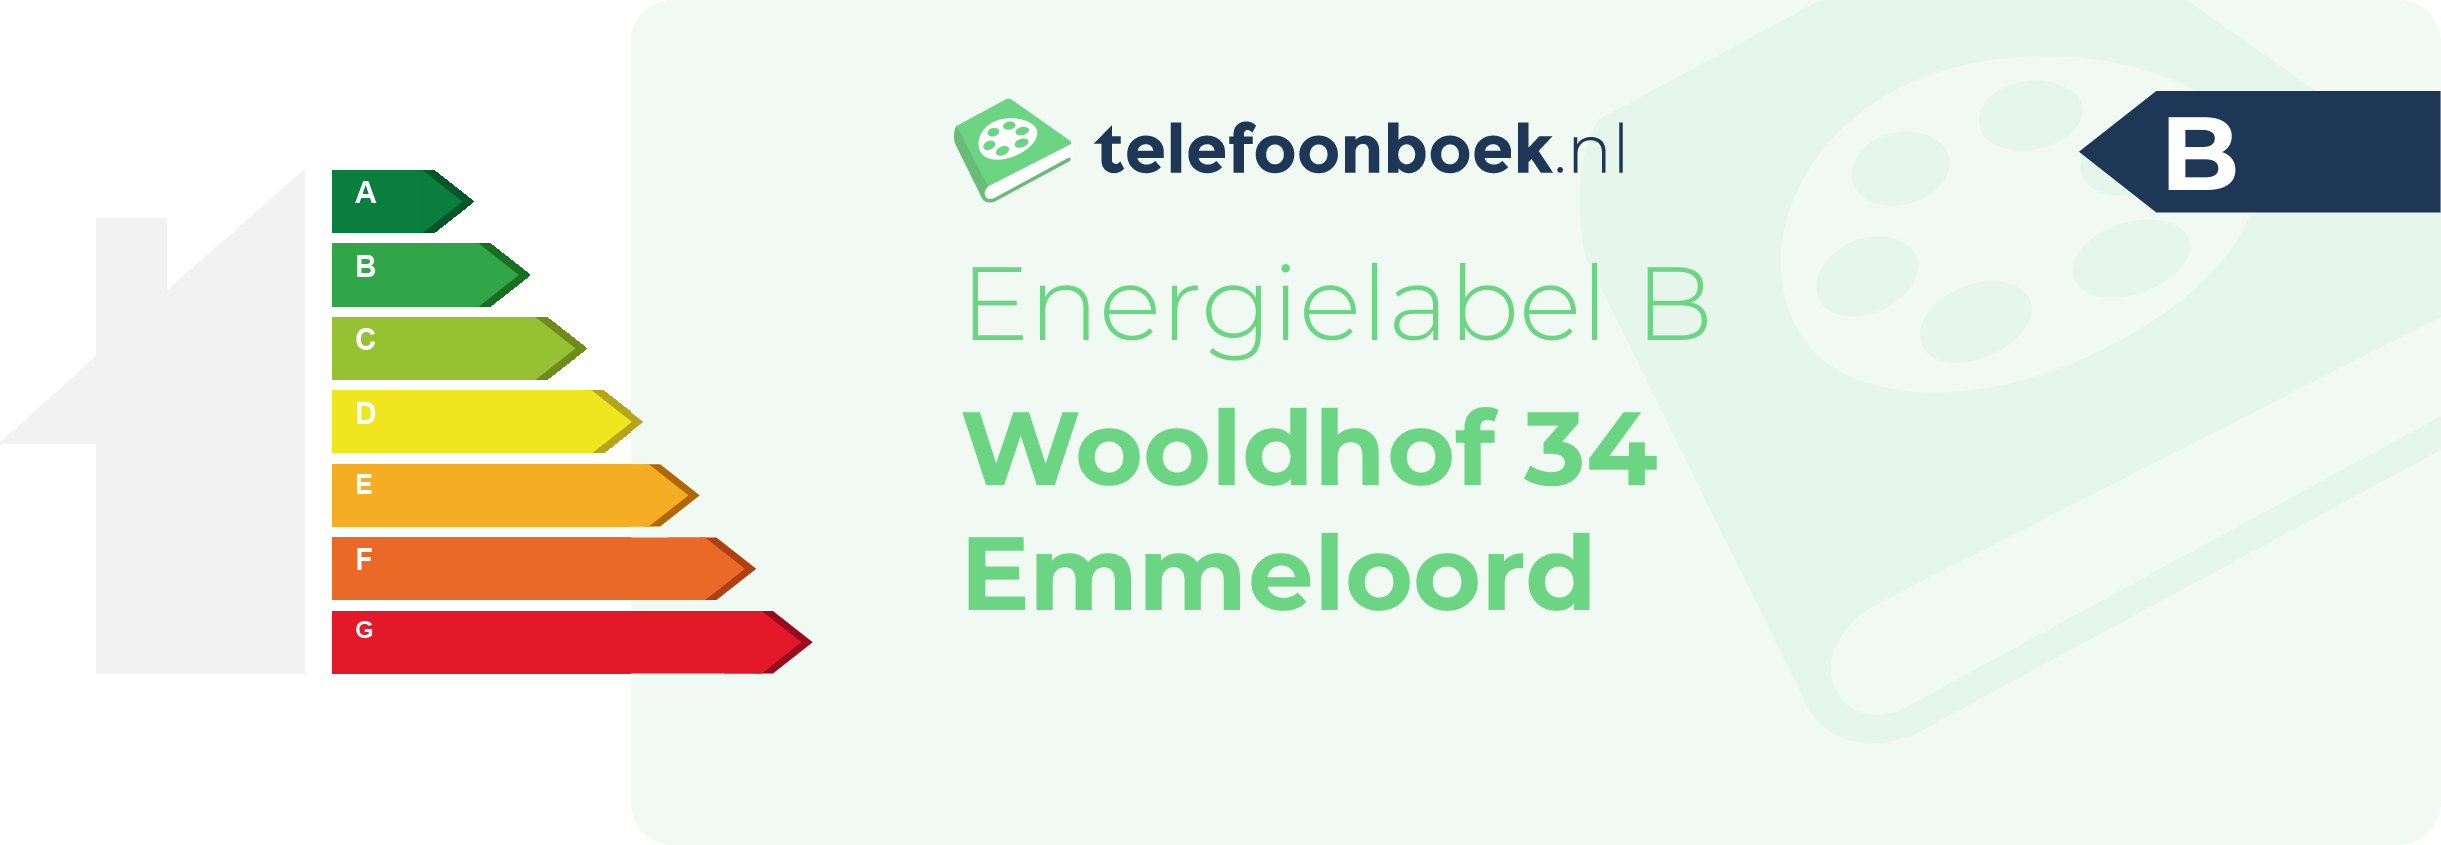 Energielabel Wooldhof 34 Emmeloord